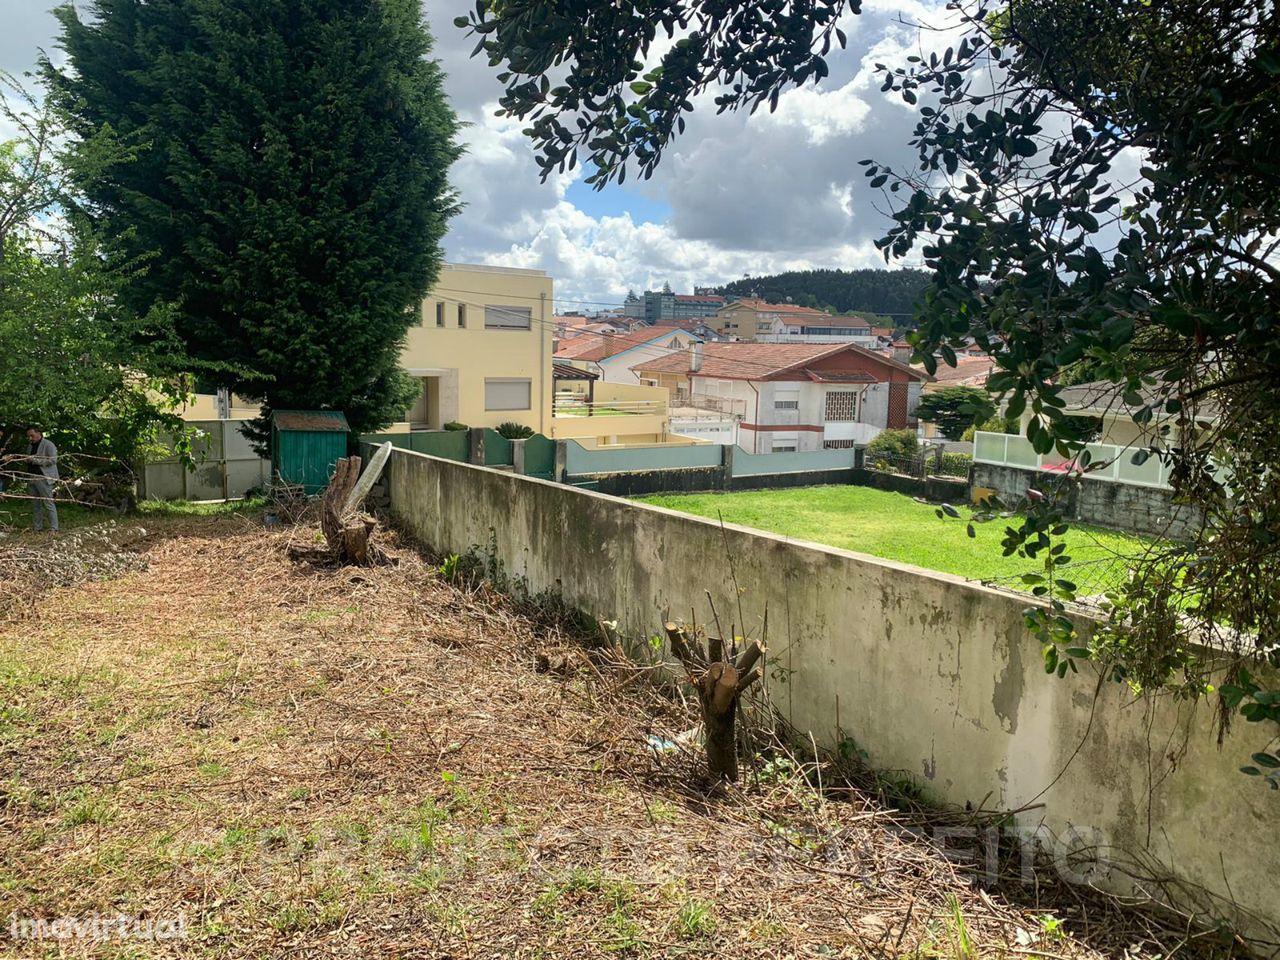 Lote de Terreno  Venda em Serzedo e Perosinho,Vila Nova de Gaia